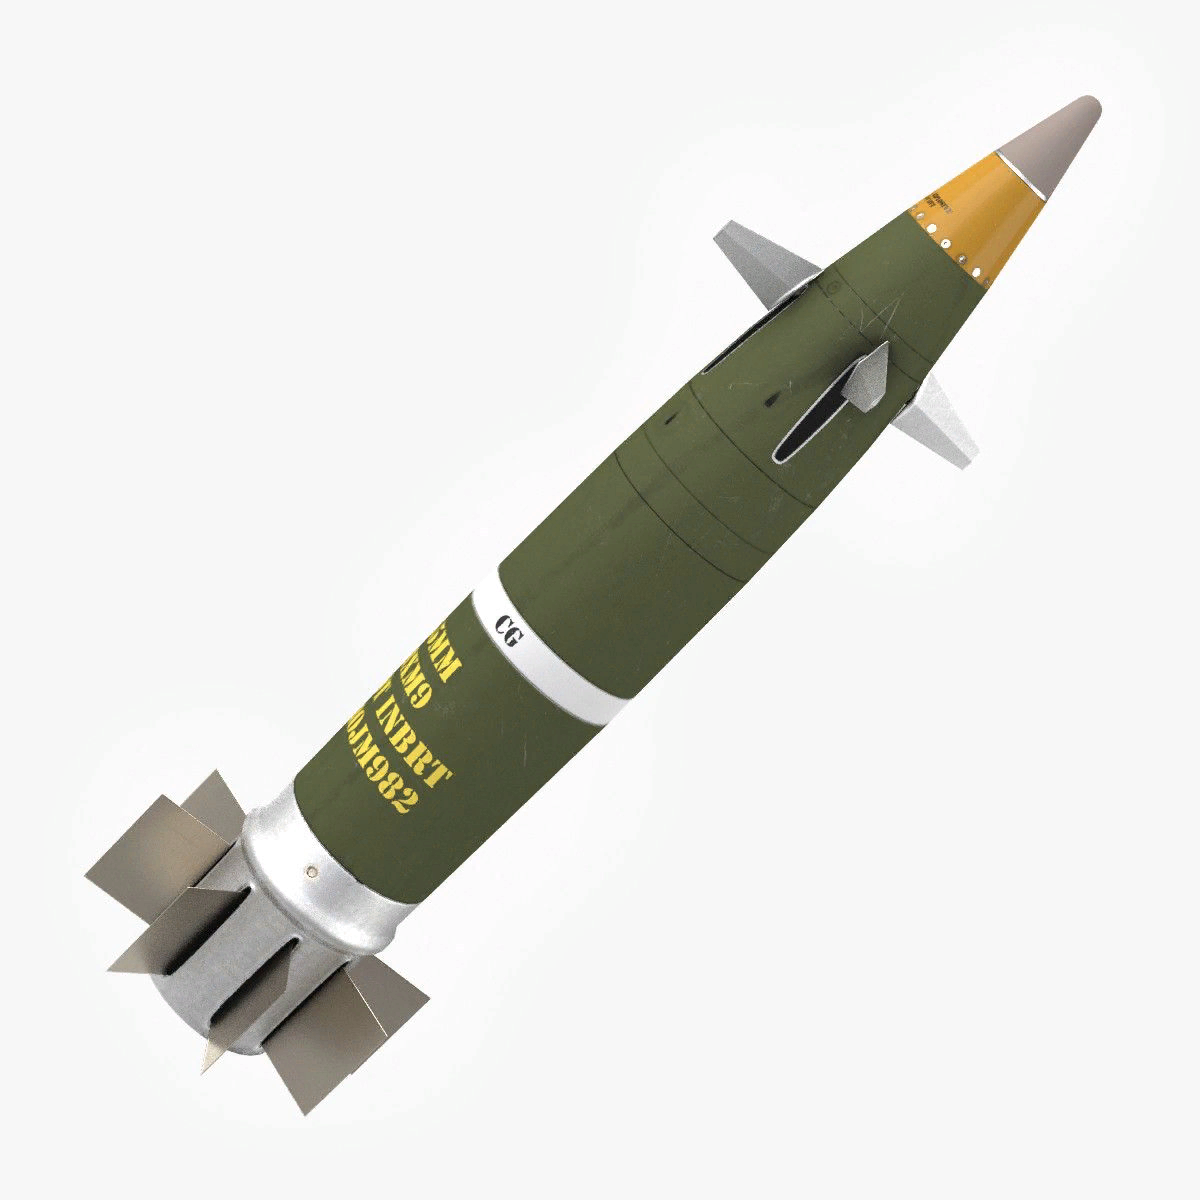 Ракетный боеприпас. M982 Excalibur. Управляемый снаряд m982 "Эскалибур". 155-Мм снаряды m982 Excalibur. Excalibur снаряд 155-мм.